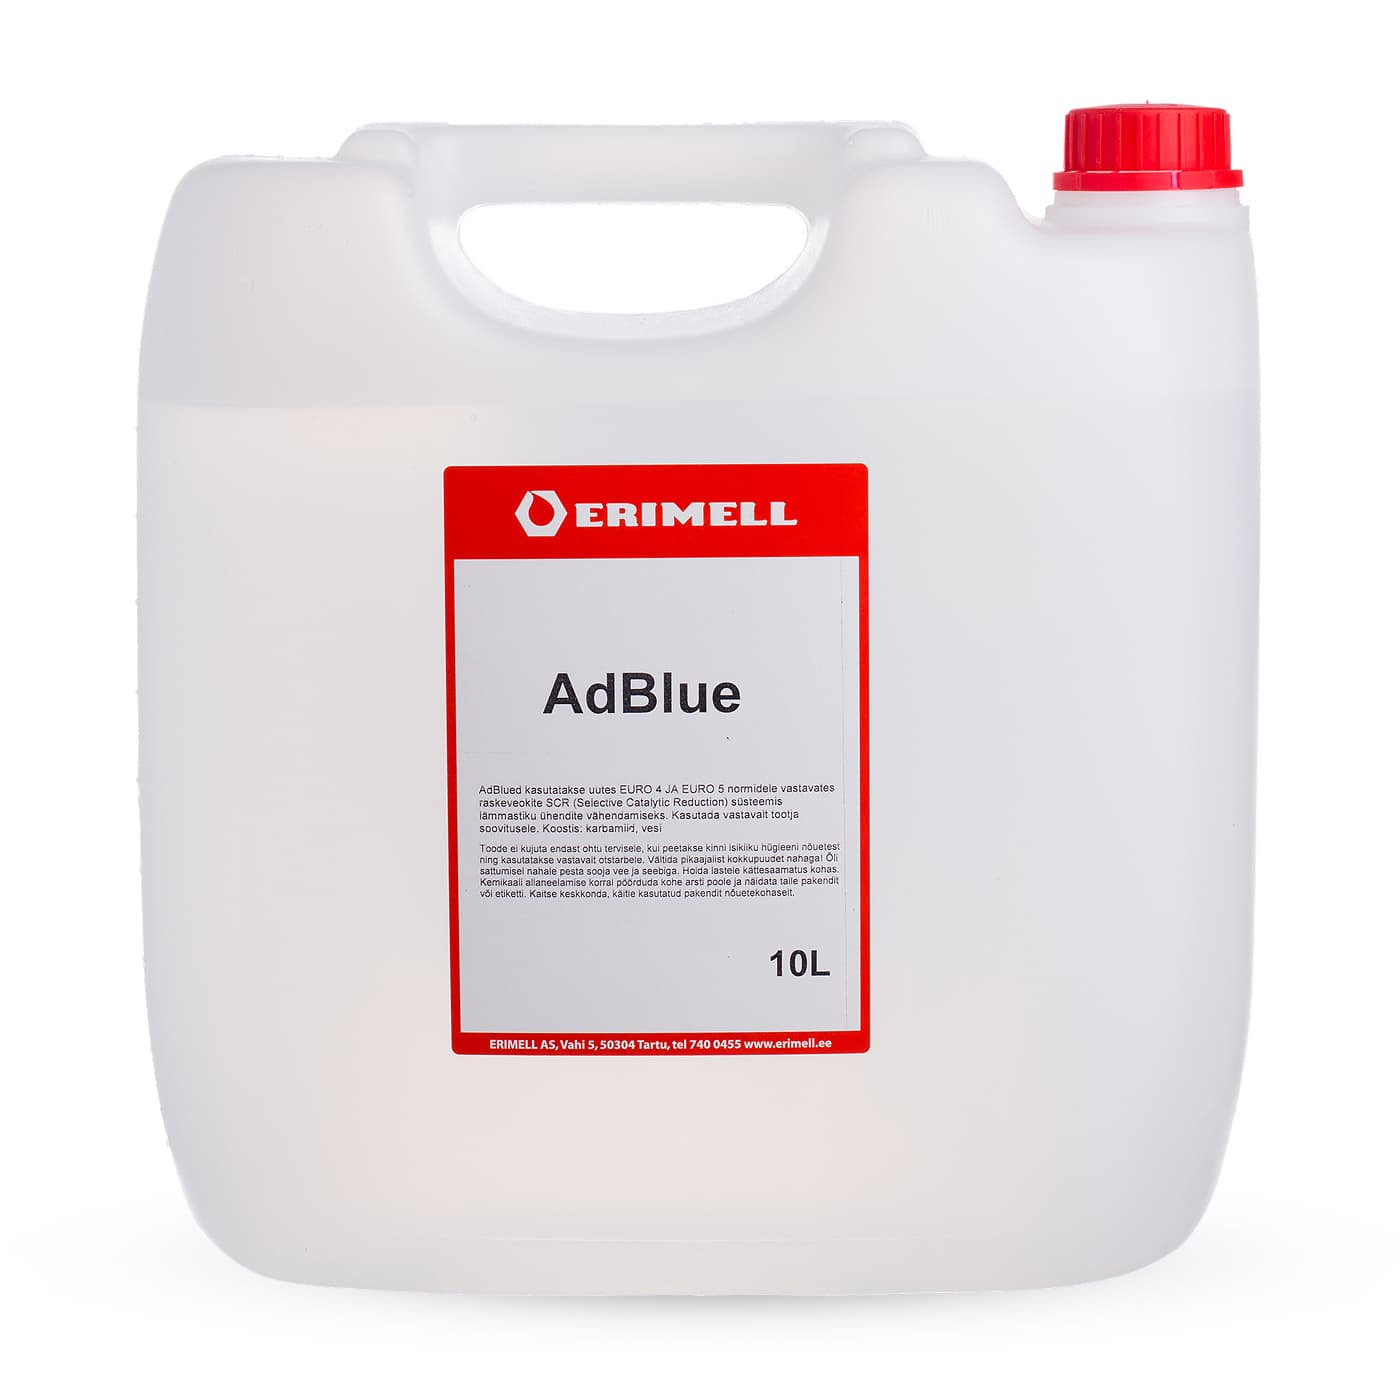 AdBlue 10L kanister